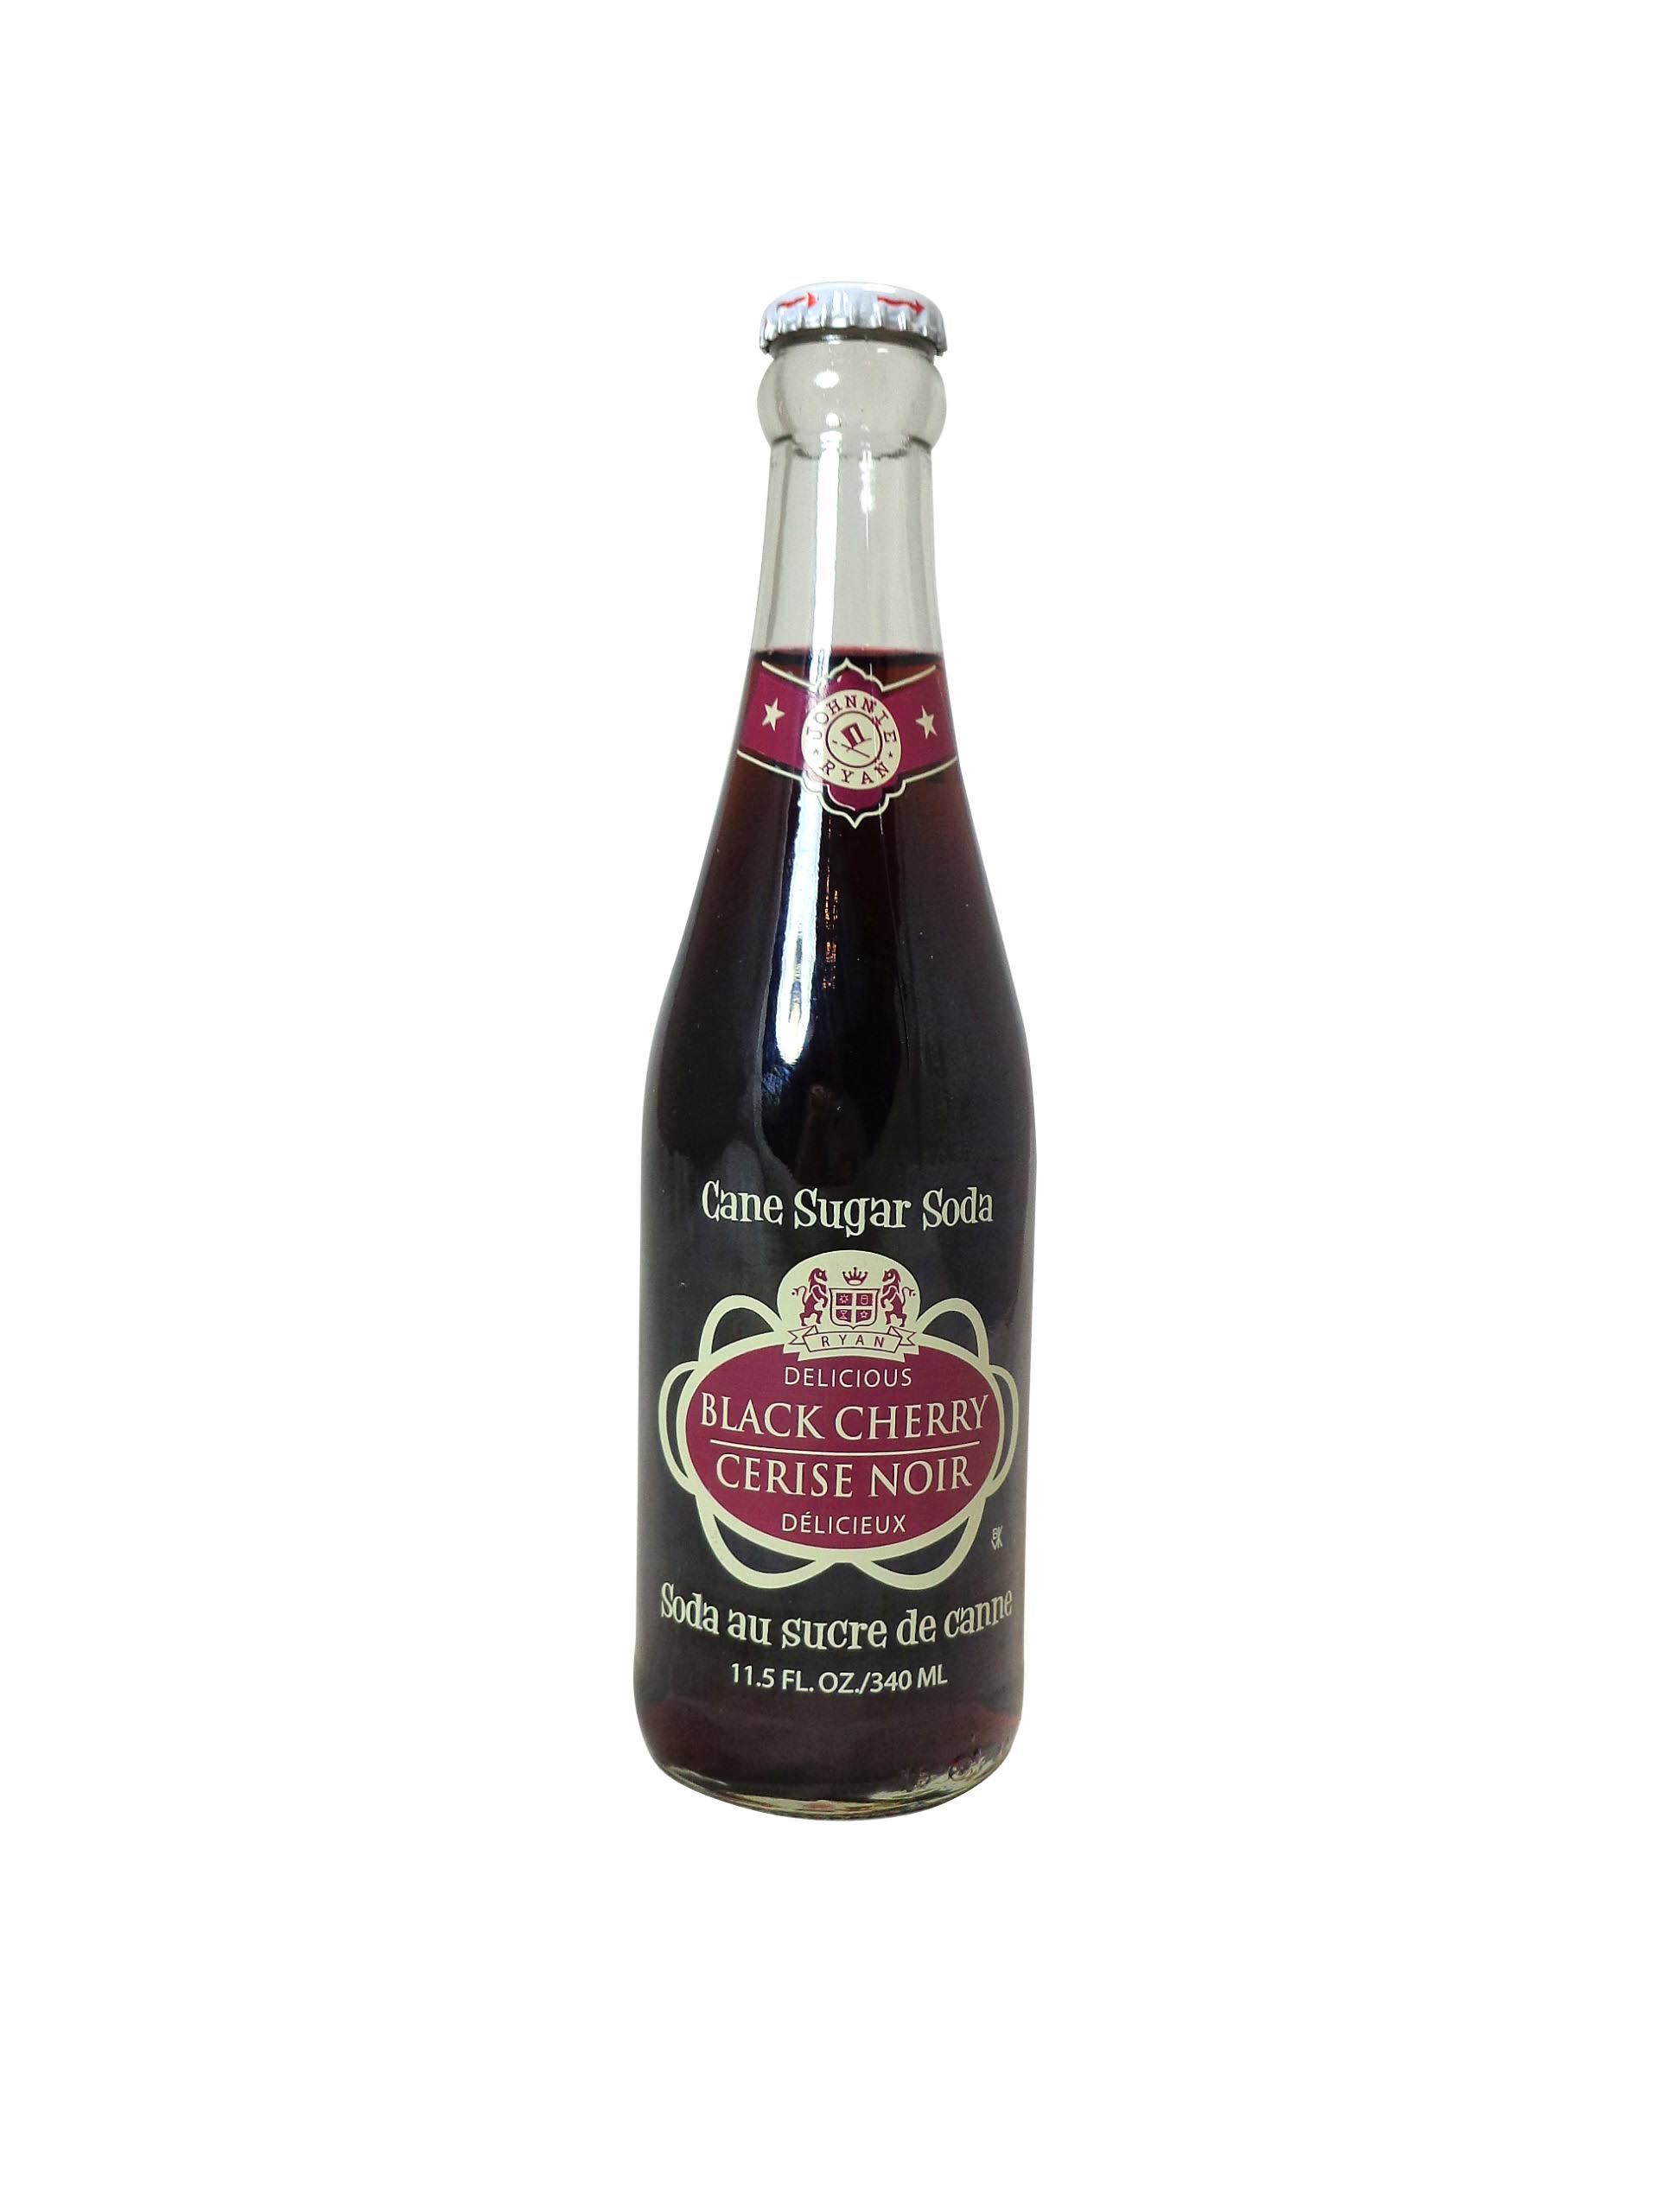 Johnnie Ryan Soda, Cane Sugar, Black Cherry - 11.5 fl oz